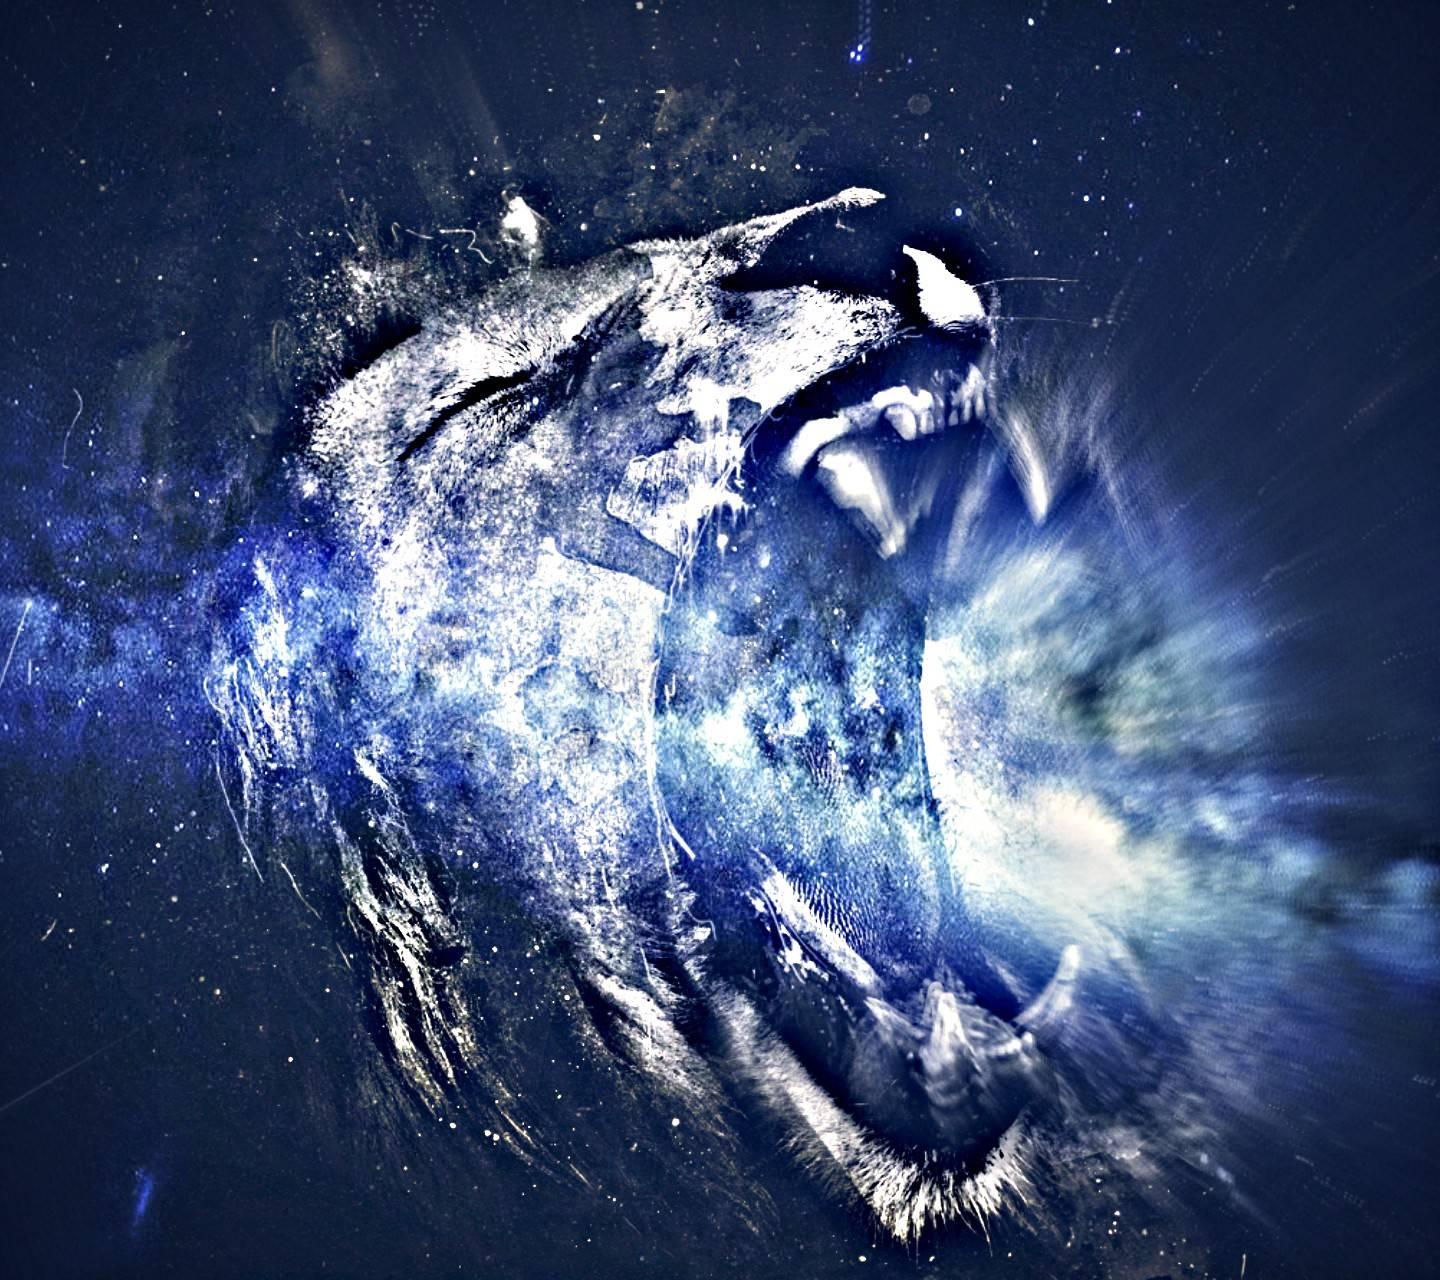 1440 x 1280 · jpeg - space lion roar wallpaper by zombieAmil - cc - Free on ZEDGETM